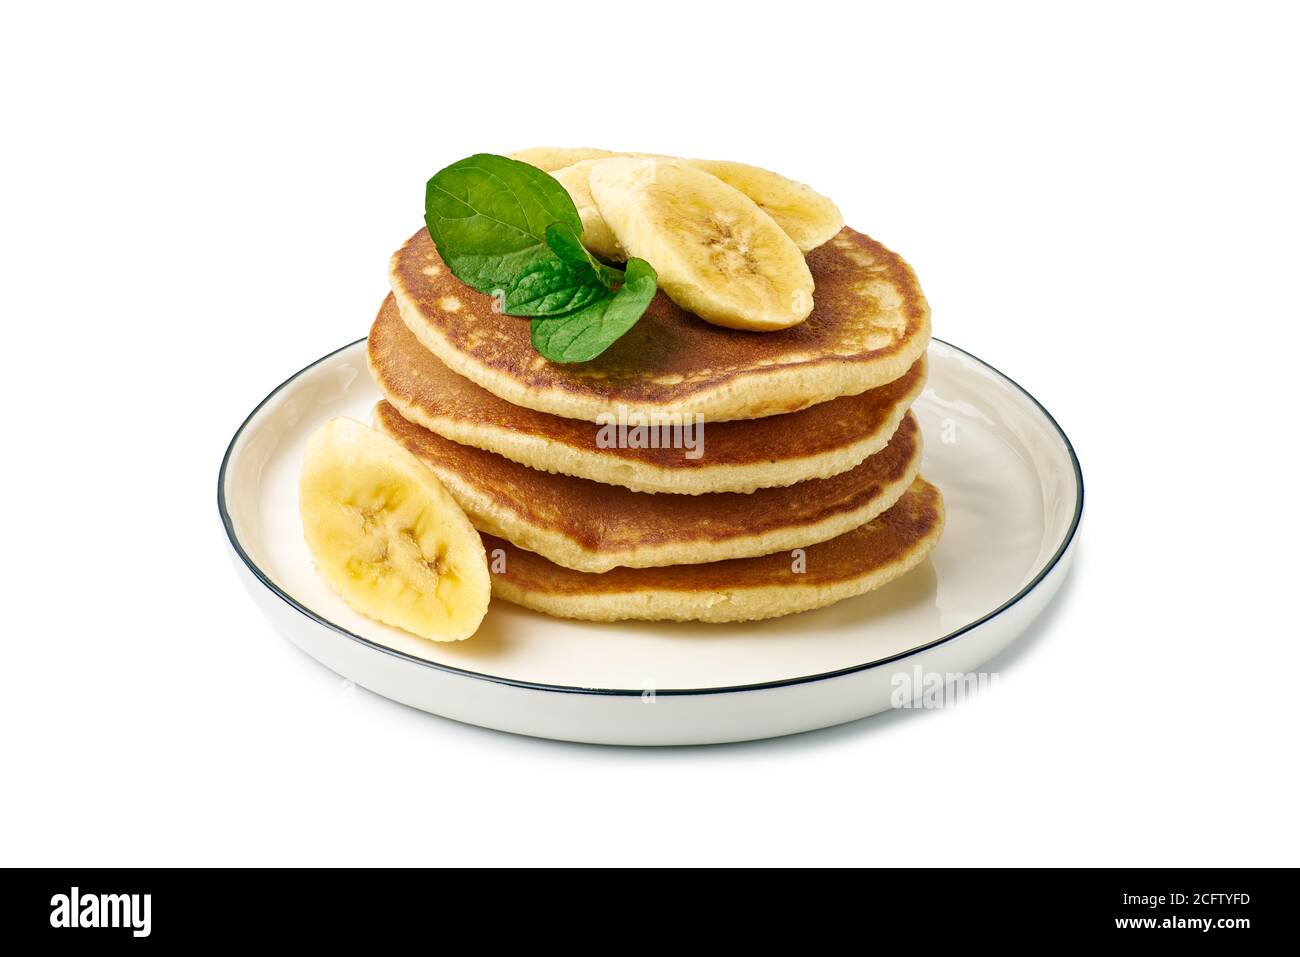 Stapel von Pfannkuchen mit Banane und Minze Blatt auf Gericht Überweiß Stockfoto